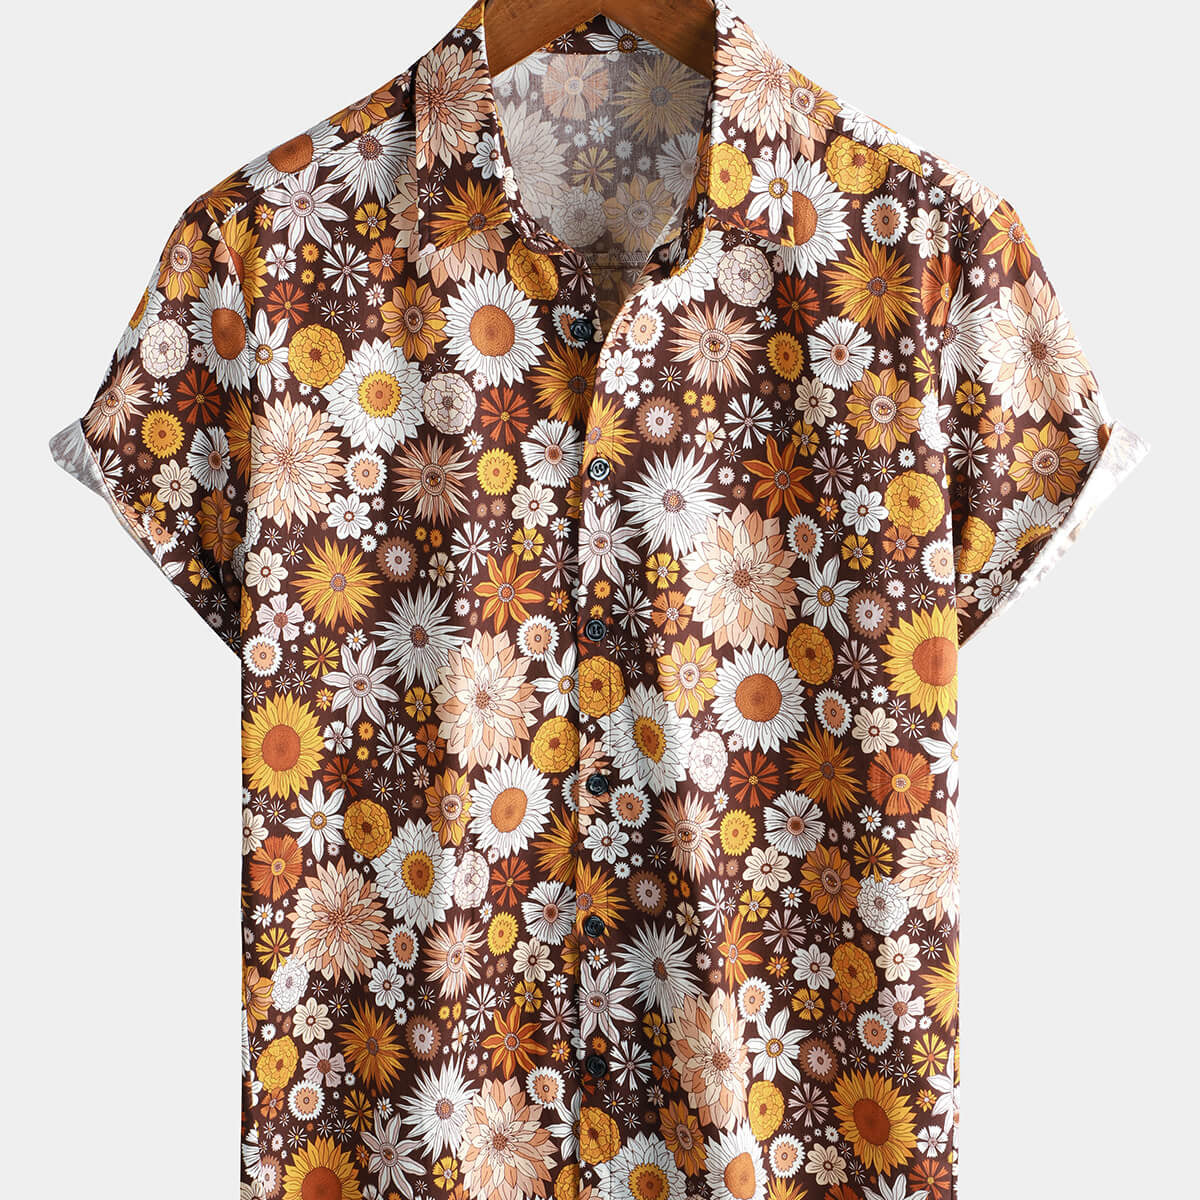 Men's Floral Print Summer Vintage Short Sleeve Shirt